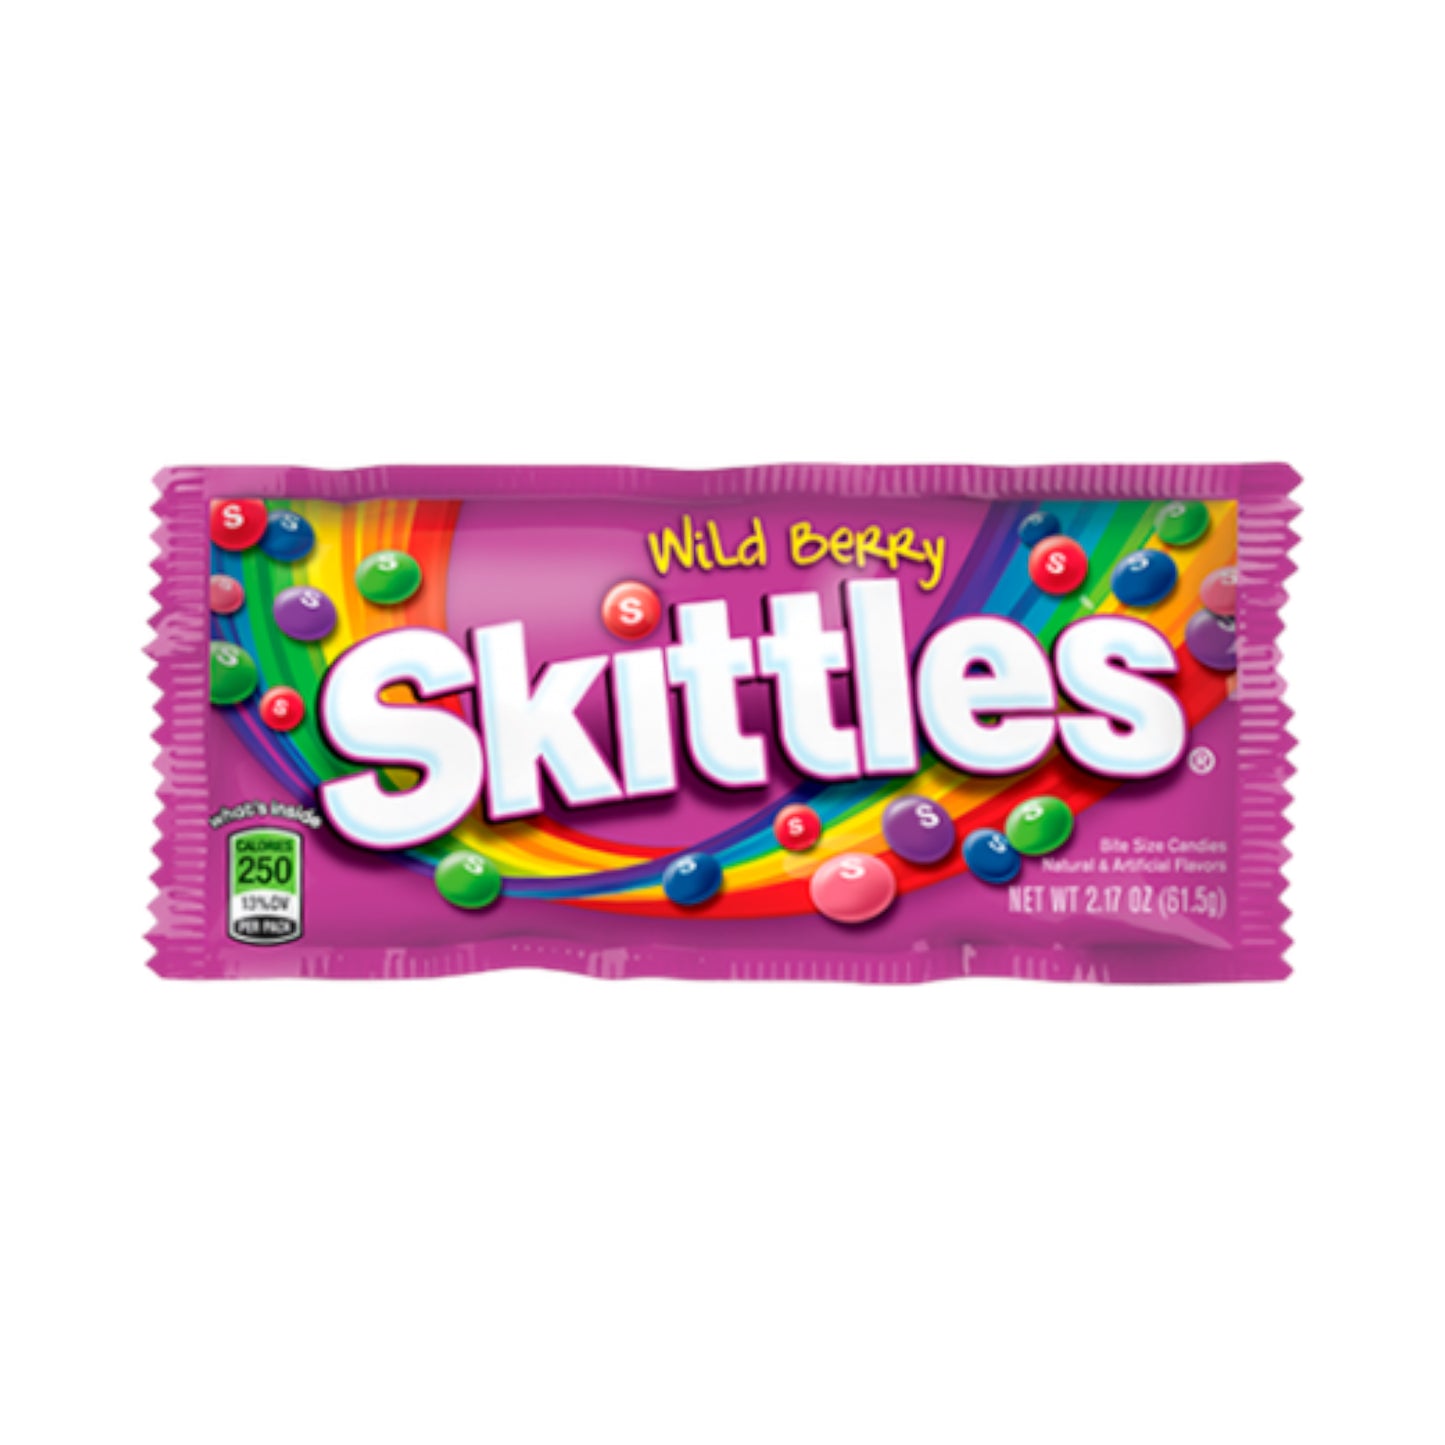 Skittles Wild Berry 2.17oz (61.5g) - (USA)